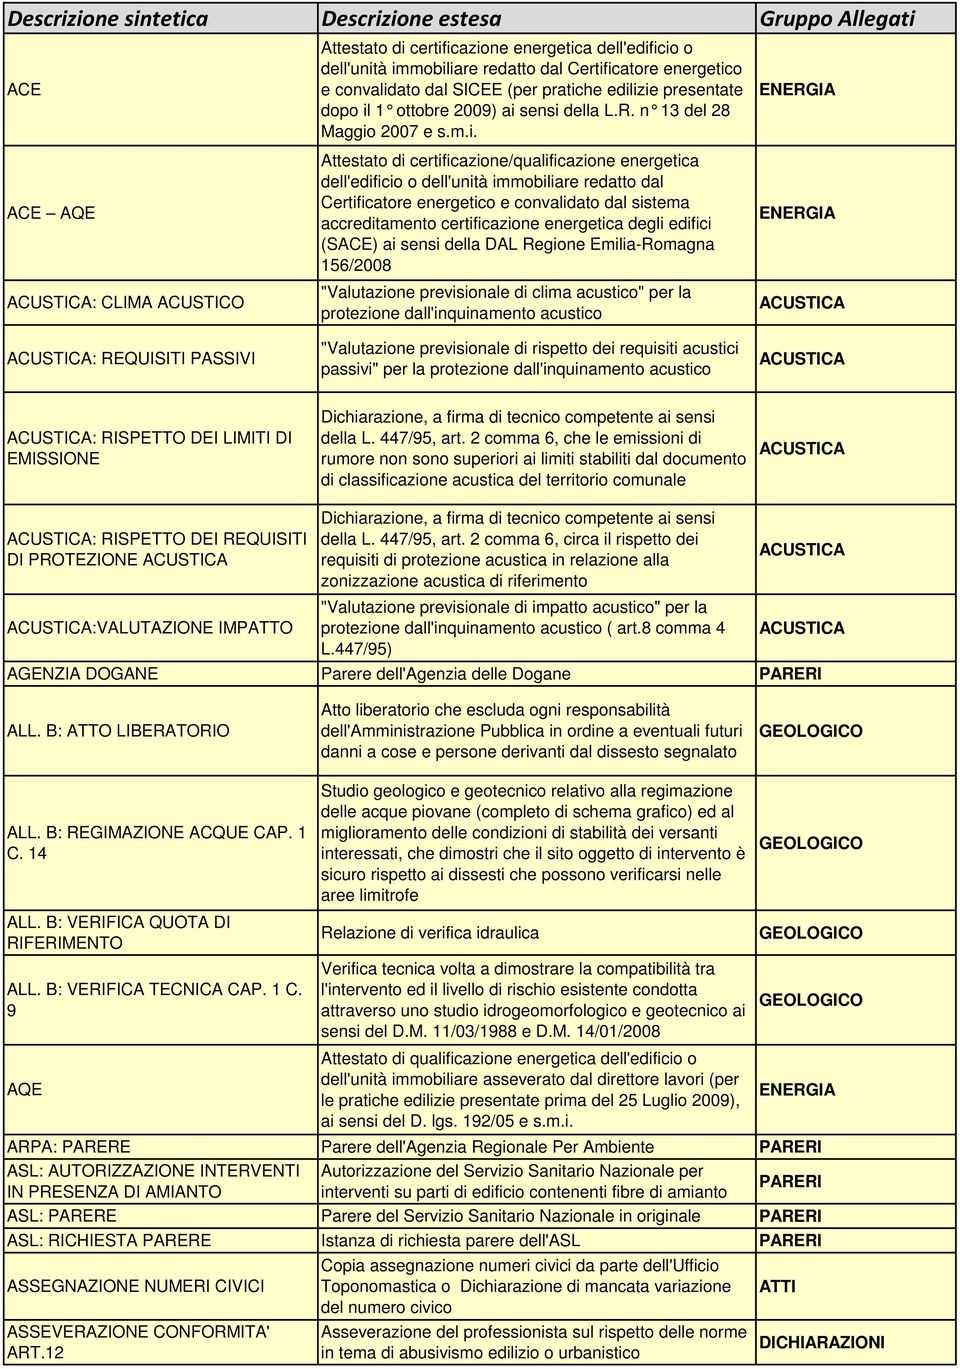 icatore energetico e convalidato dal SICEE (per pratiche edilizie presentate dopo il 1 ottobre 2009) ai sensi della L.R. n 13 del 28 Maggio 2007 e s.m.i. Attestato di certificazione/qualificazione